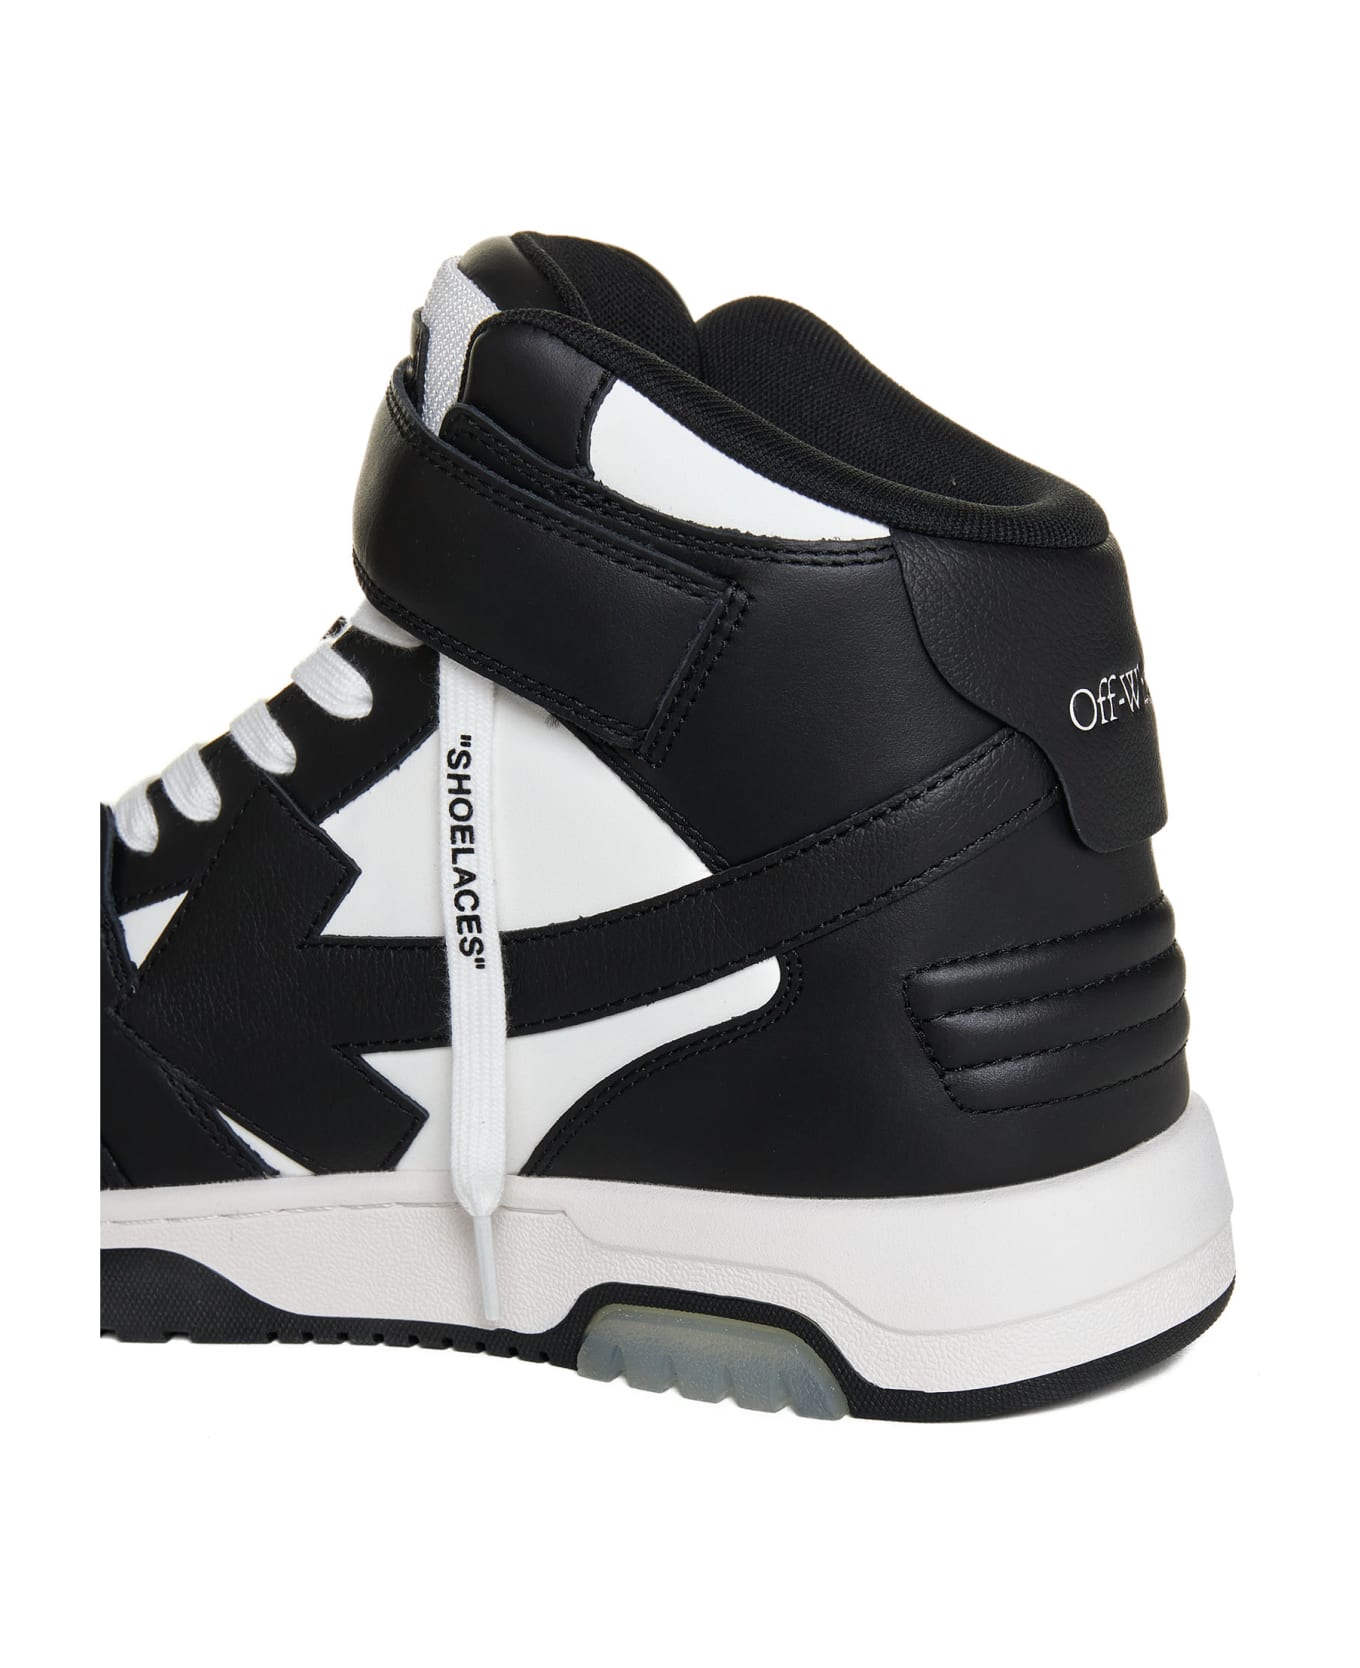 Off-White Sneakers - White BLACK